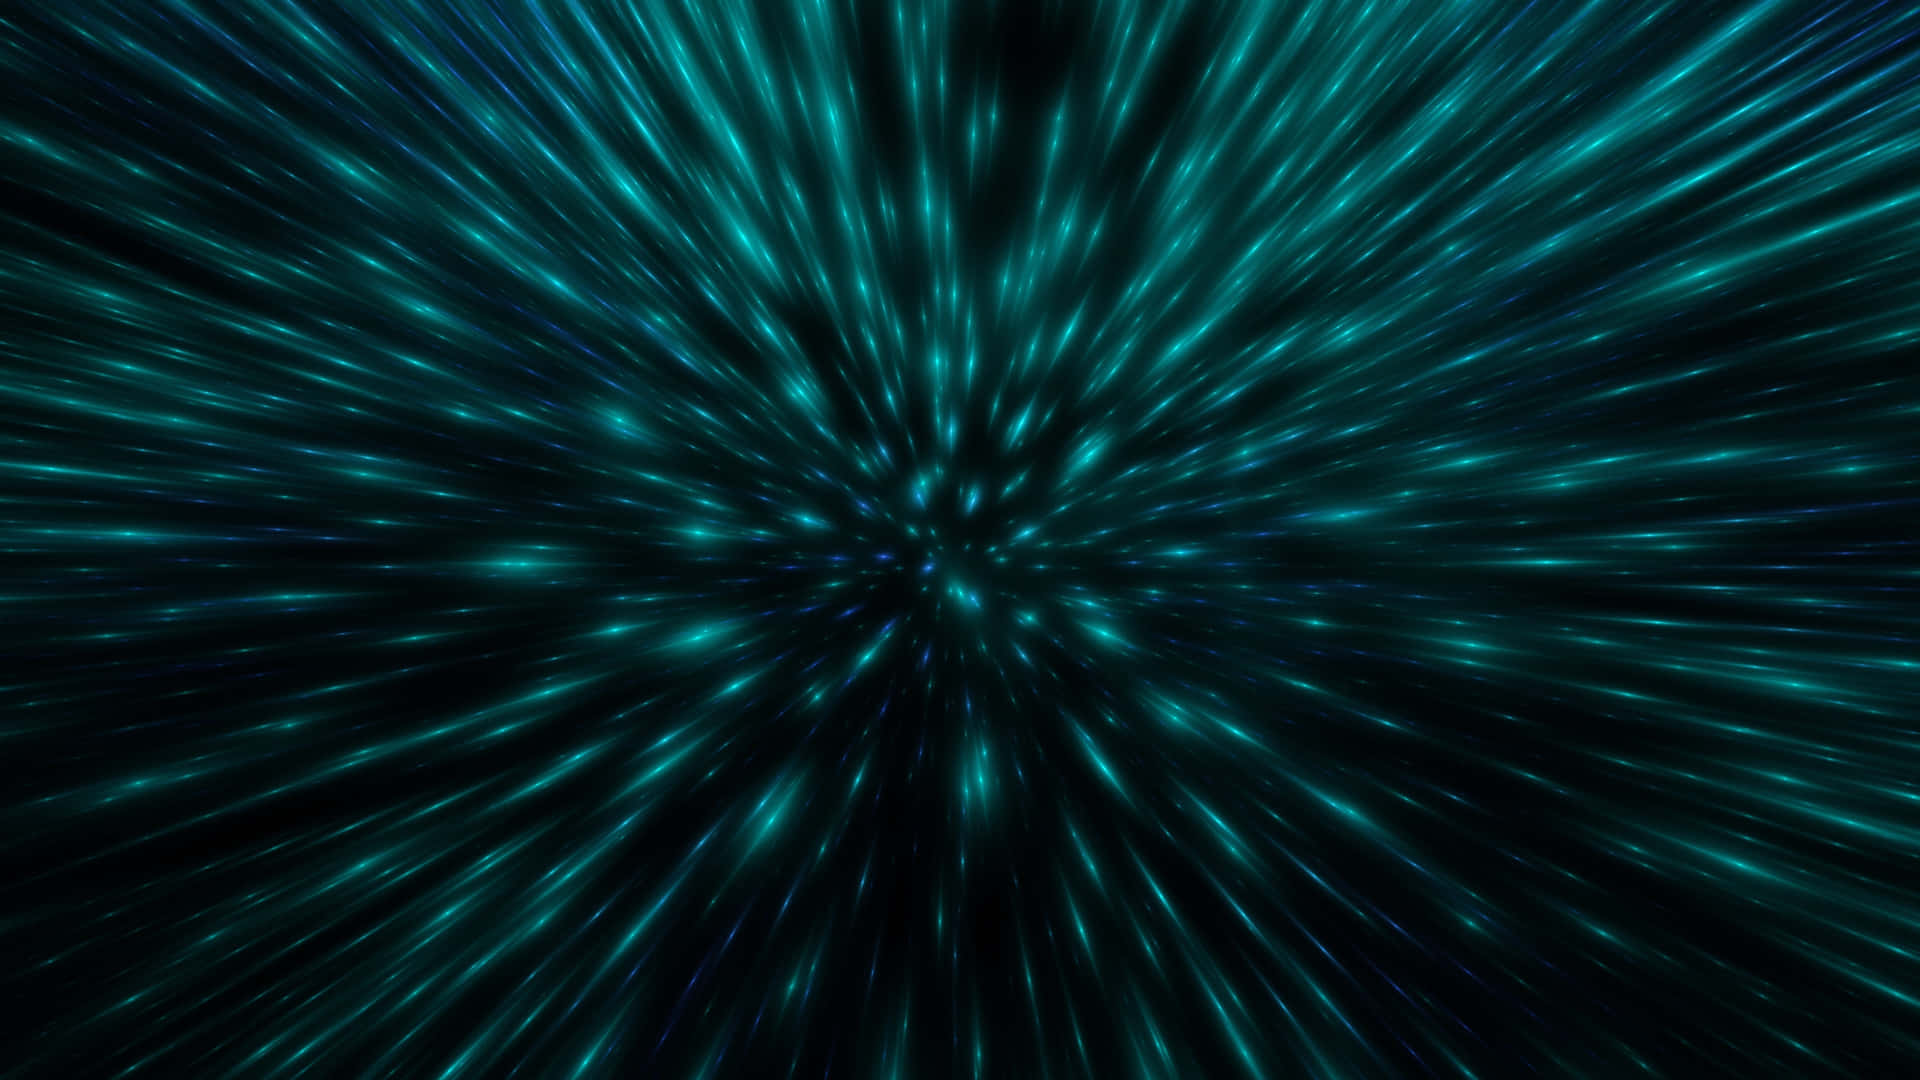 Kosmisk 4k - Udforsk dybderne af universet i 4k Wallpaper